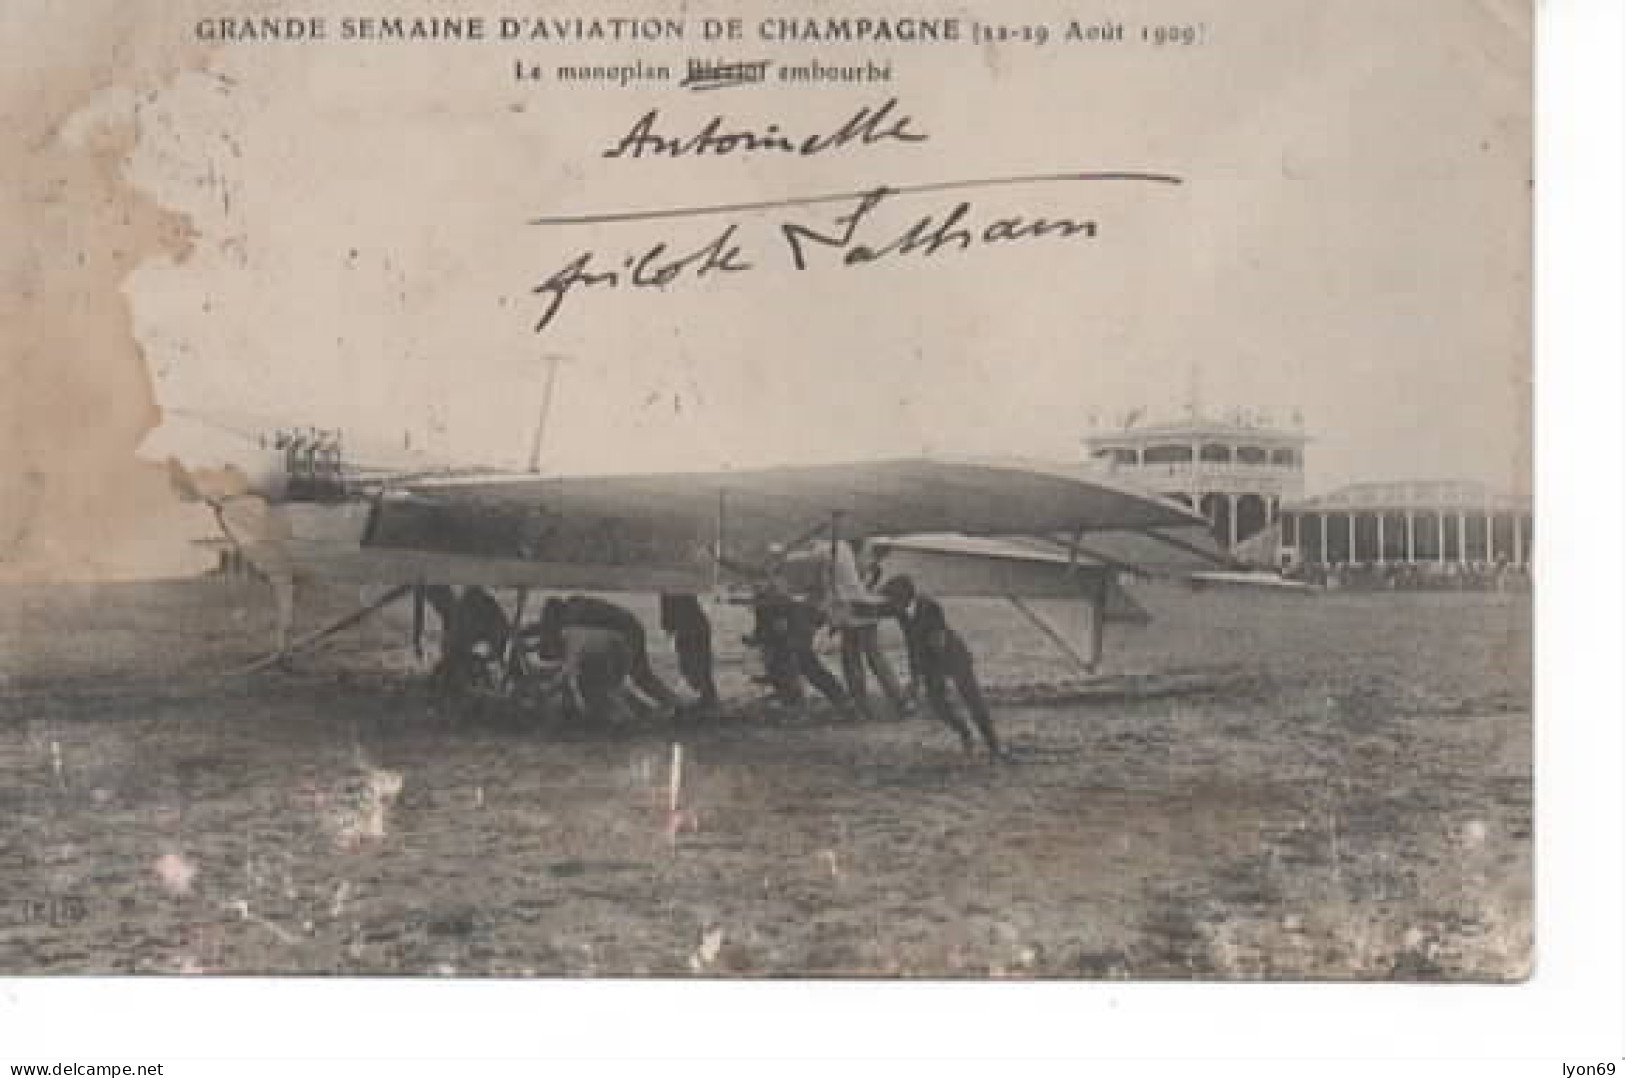 GRANDE SEMAINE D AVIATION DE CHAMPAGNE 22/9  AOUT 1909  LE MONOPLAN ANTOINETTE EMBOURBE   MAUVAIS CACHET  BETENY AVIATIO - Fliegertreffen